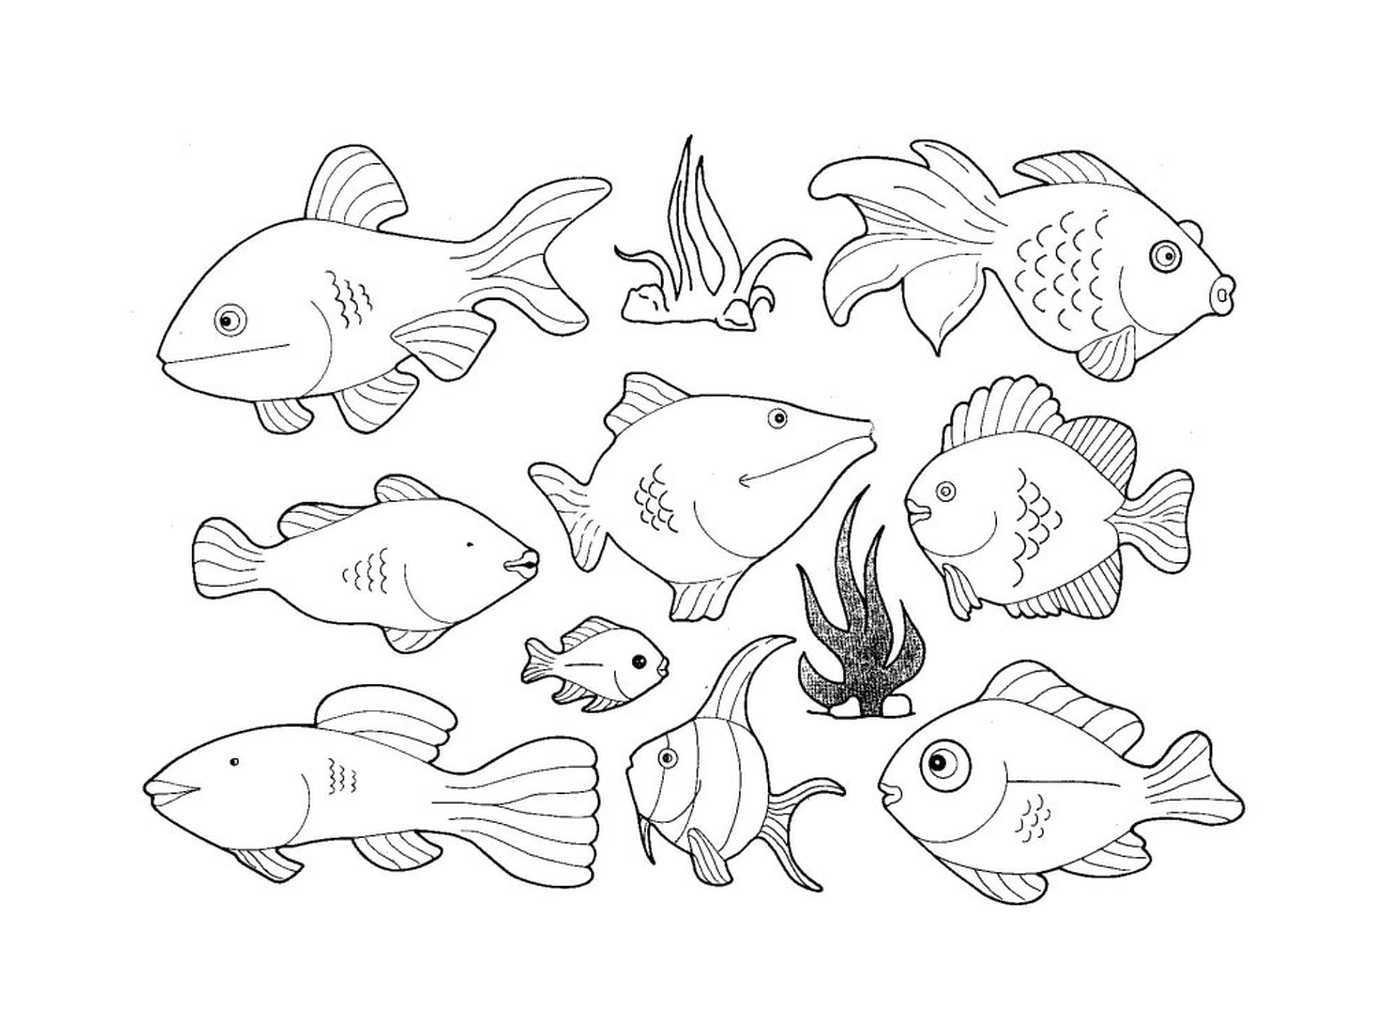  Diversi tipi di pesci in questa pagina 